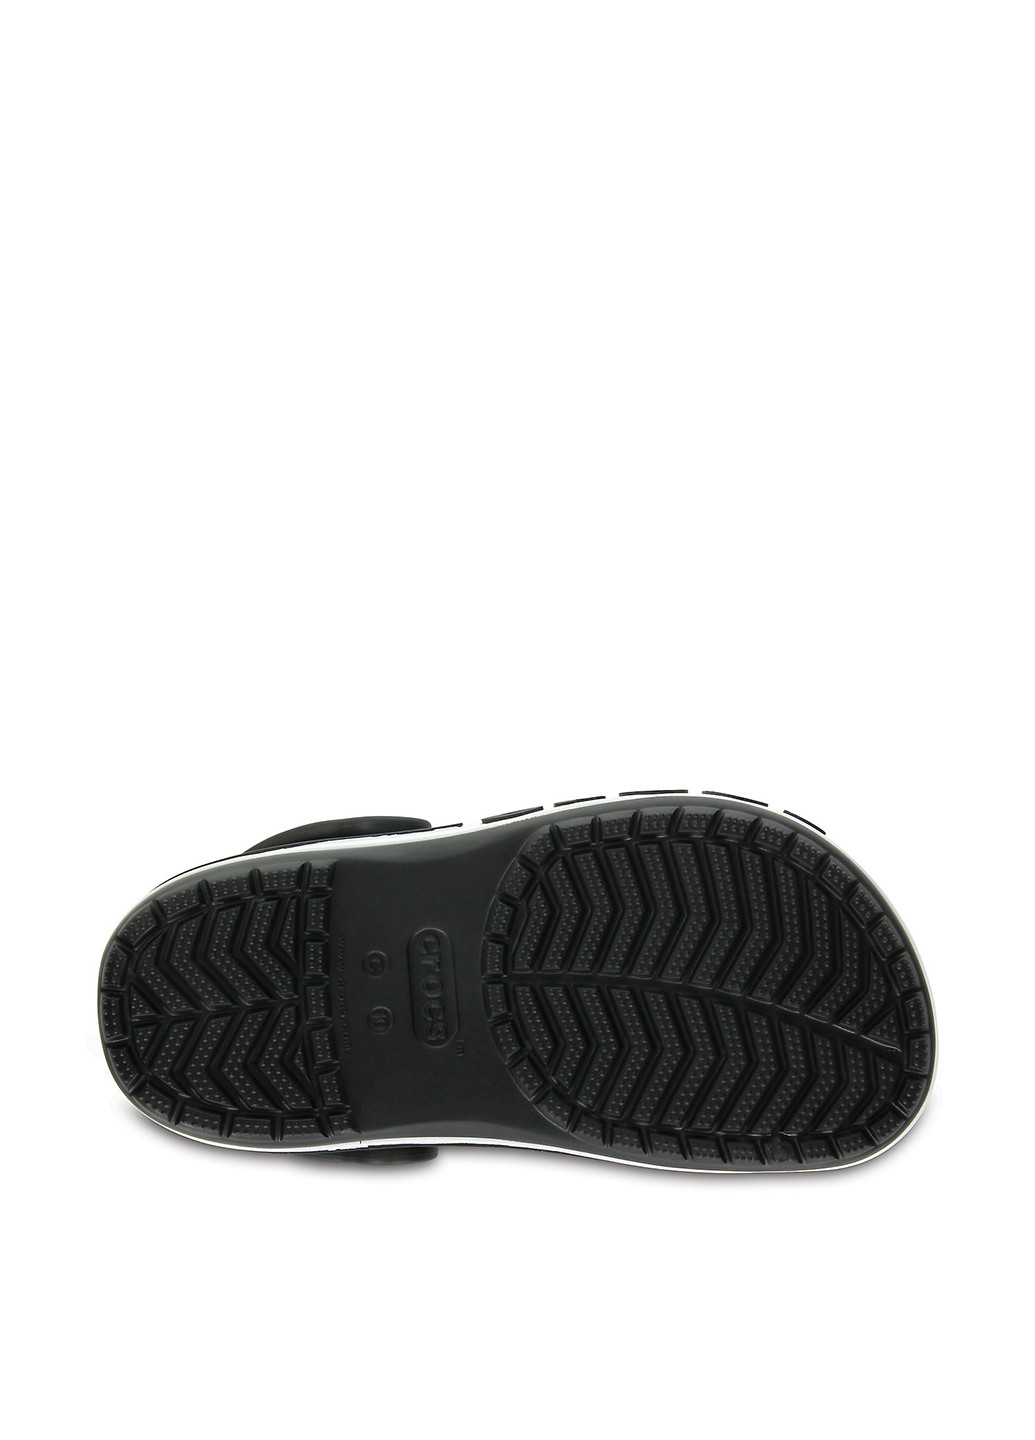 Черные сабо Crocs без каблука